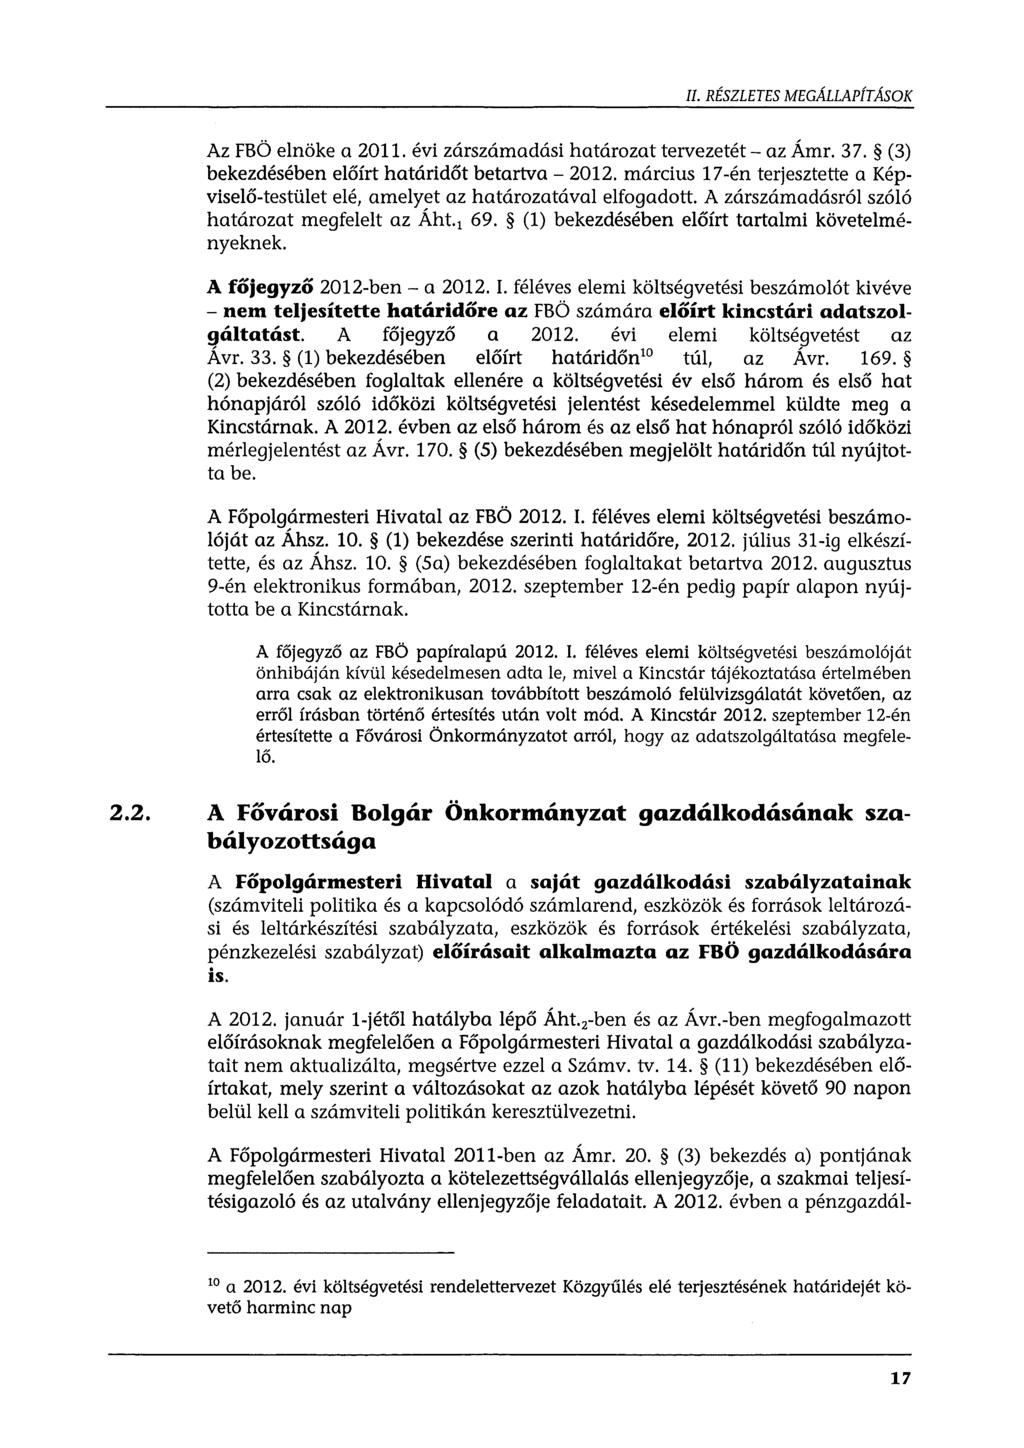 II. RÉSZLETES MEGÁLLAPÍTÁSOK Az FBÖ elnöke a 2011. évi zárszámadási határozattervezetét-az Ámr. 37. (3) bekezdésében előírt határidőt betartva- 2012.